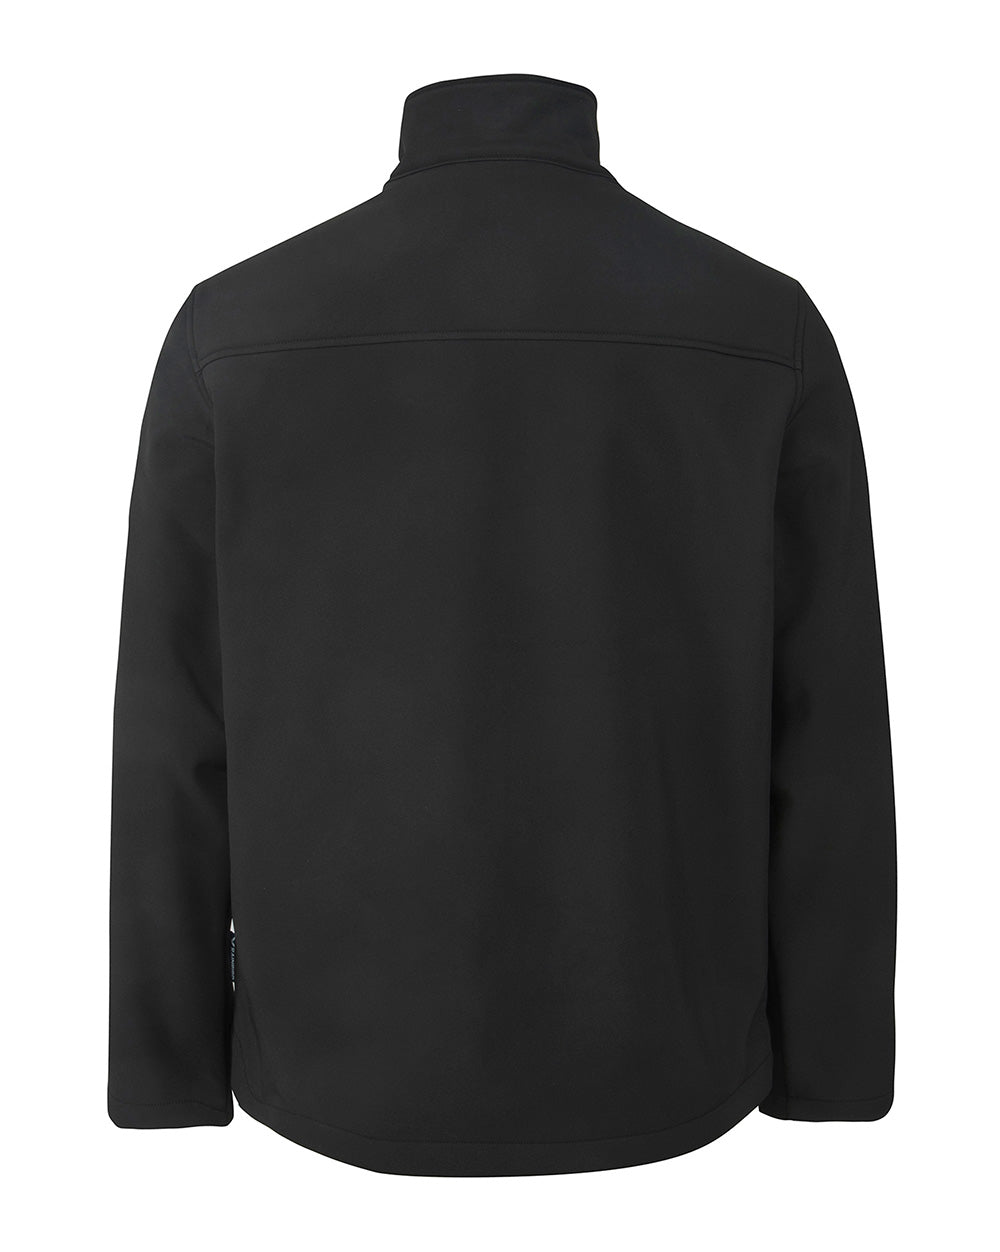 Dunstall Softshell Jacket in Black